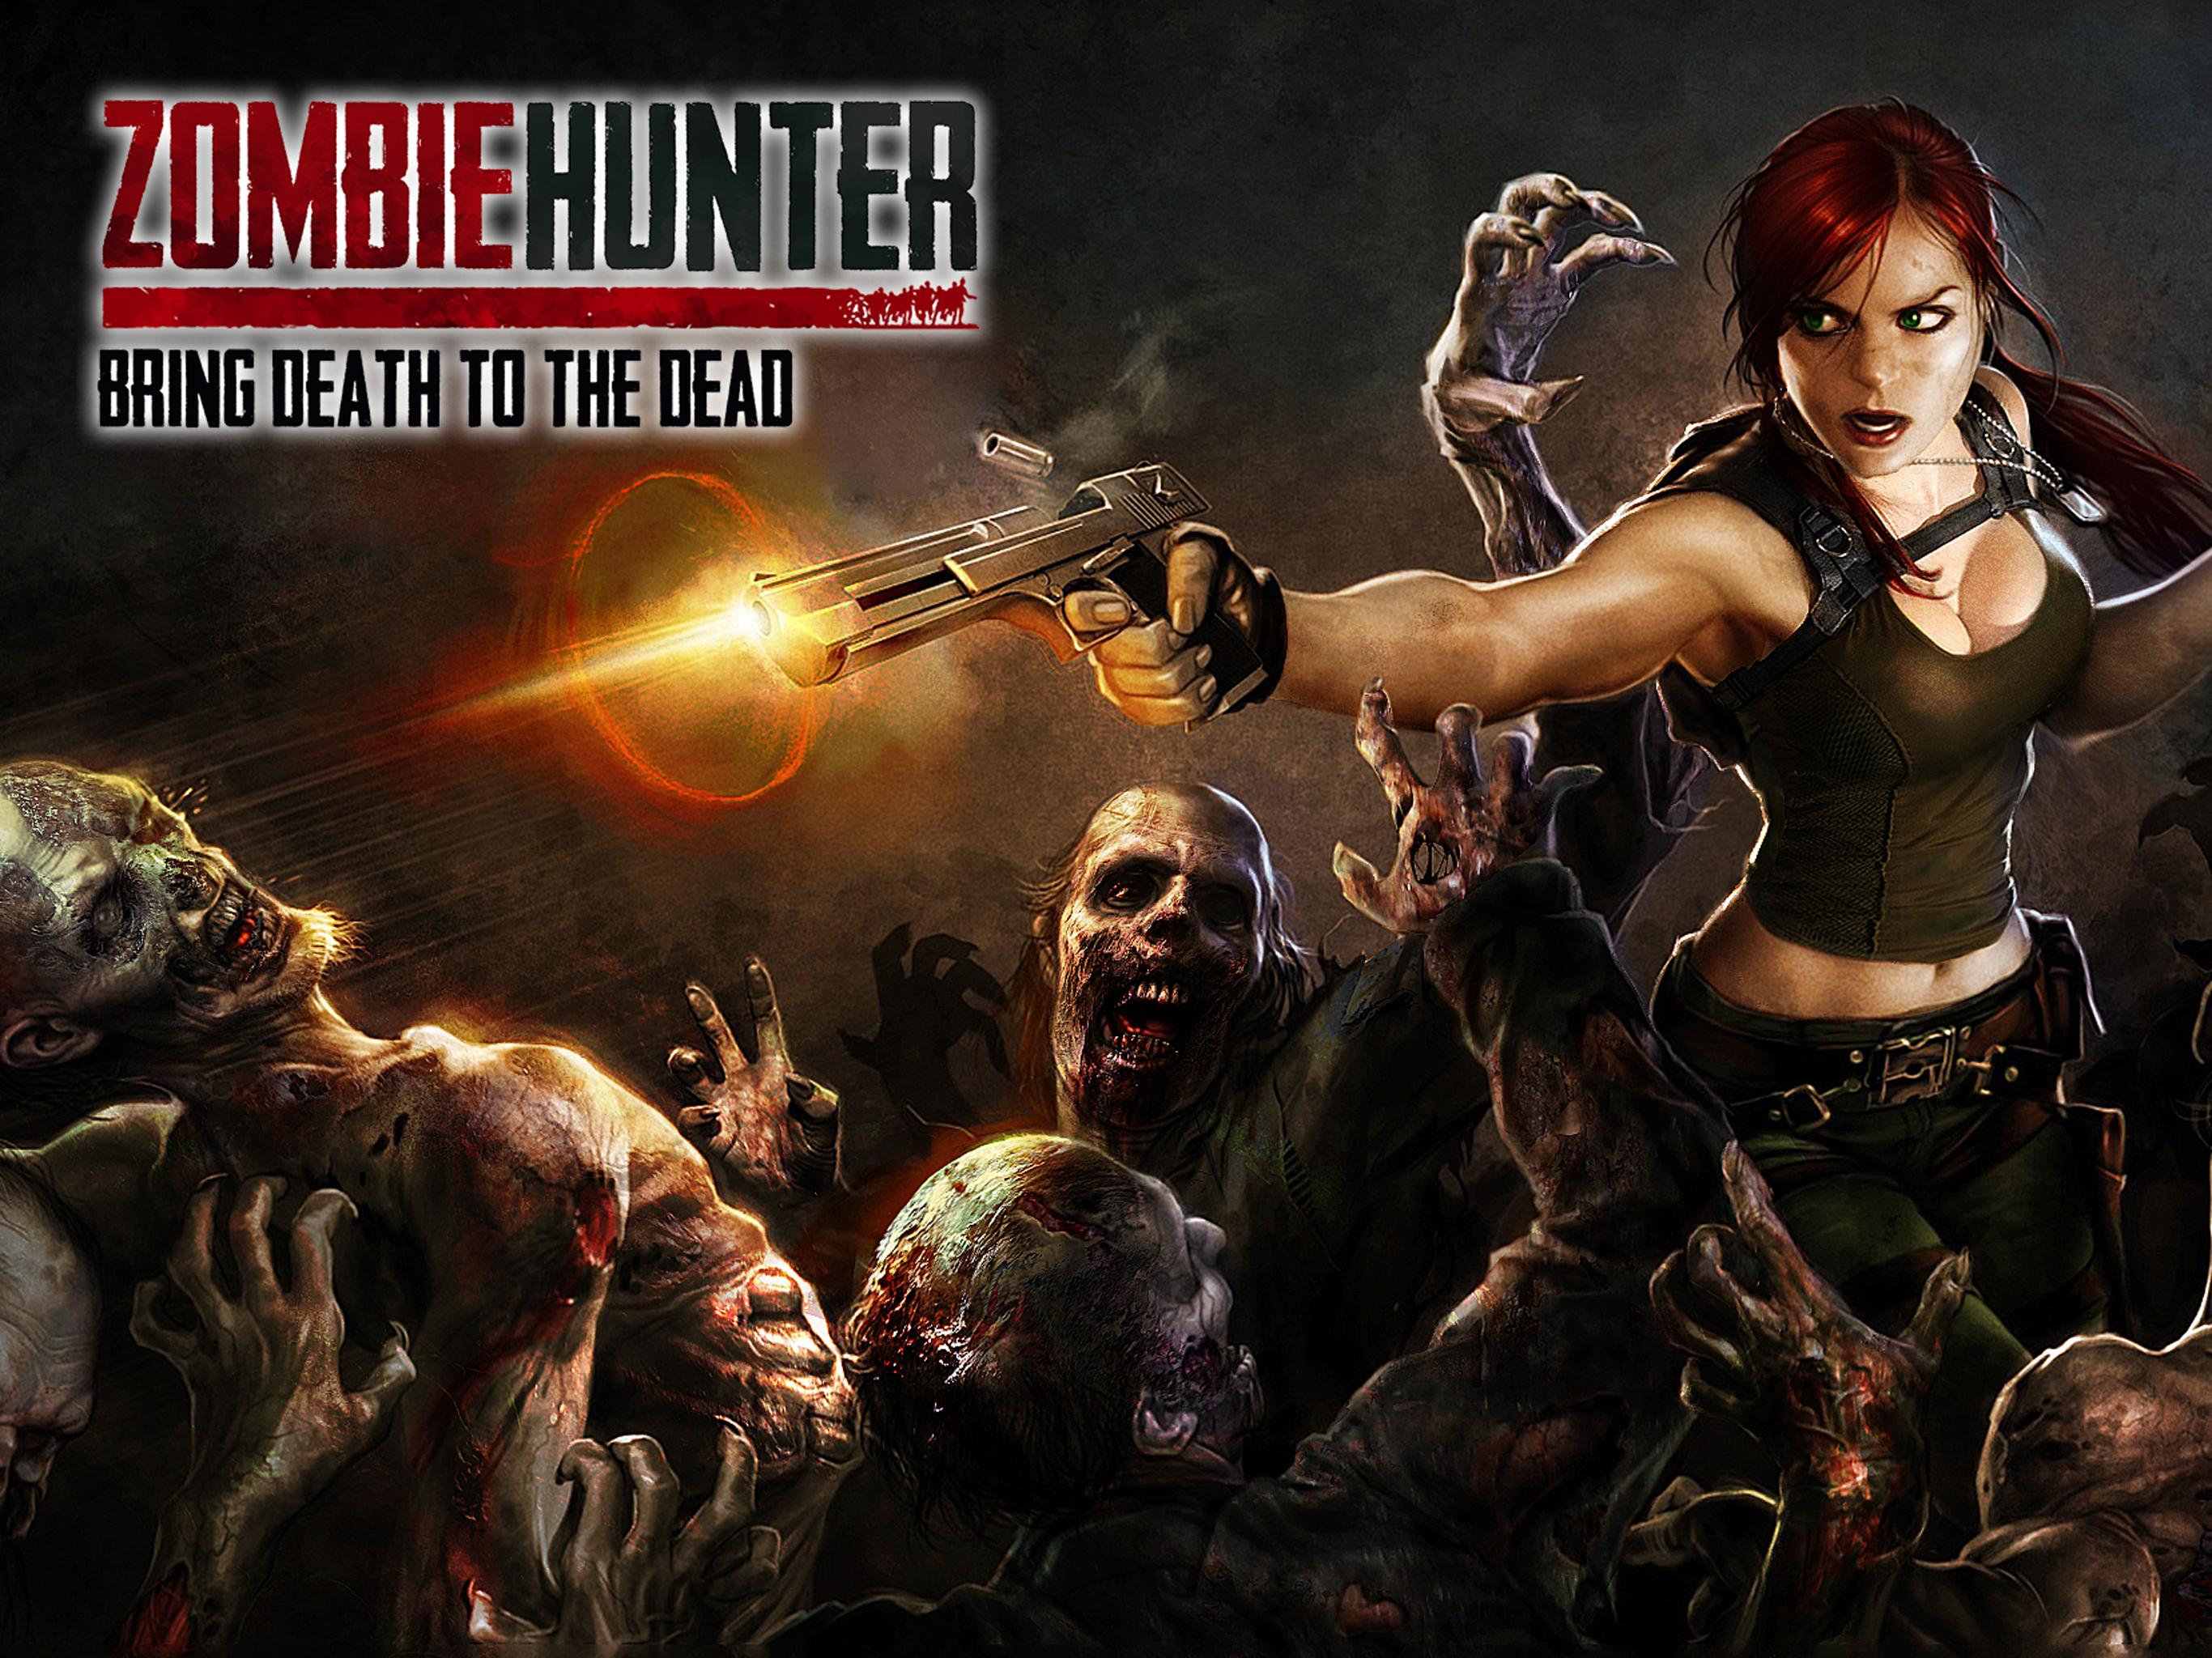 Zombie Hunter For Android Apk Download - el mejor juego de zombies de roblox call of dutys zombies